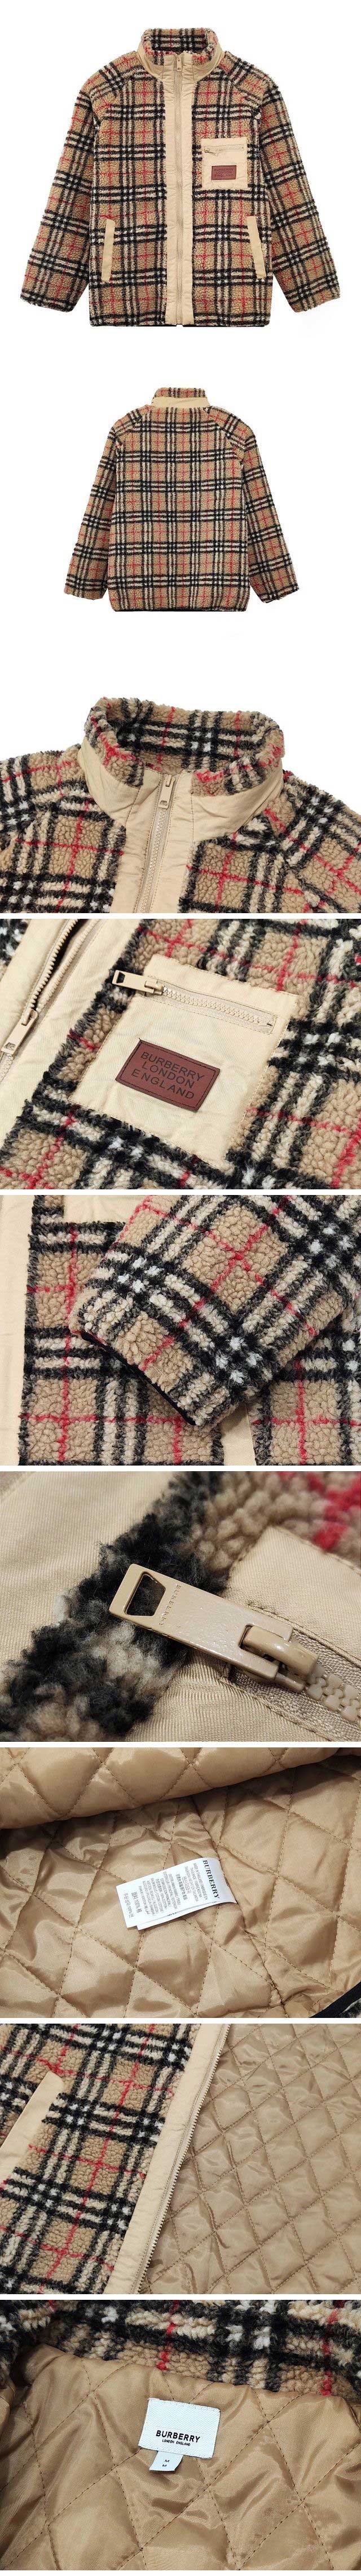 Burberry Classic Lamb Wool Cotton Jacket バーバリー クラシック ラム ウール コットン ジャケット